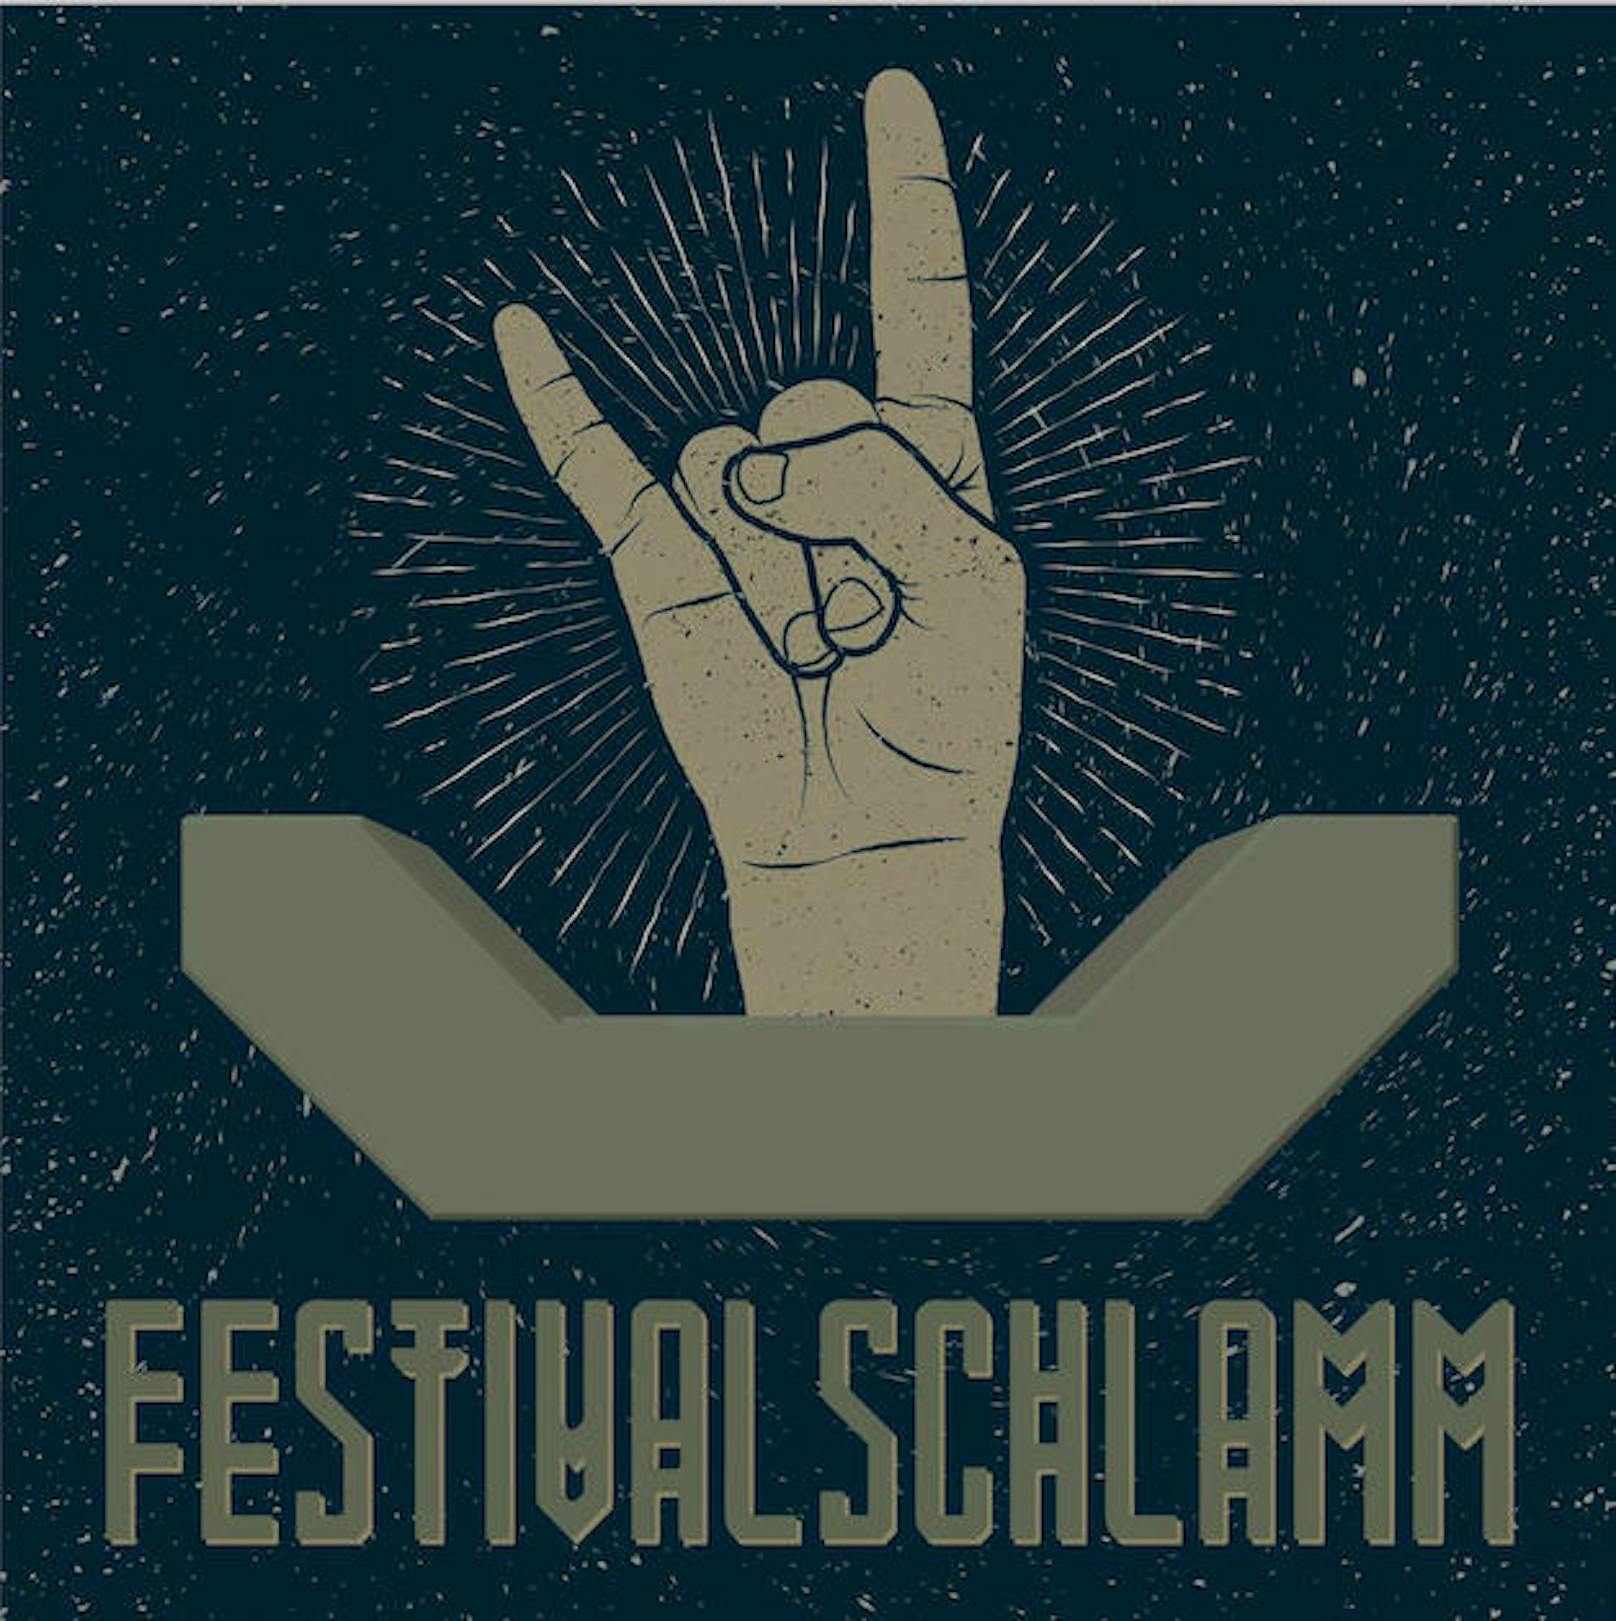 Festivalschlamm